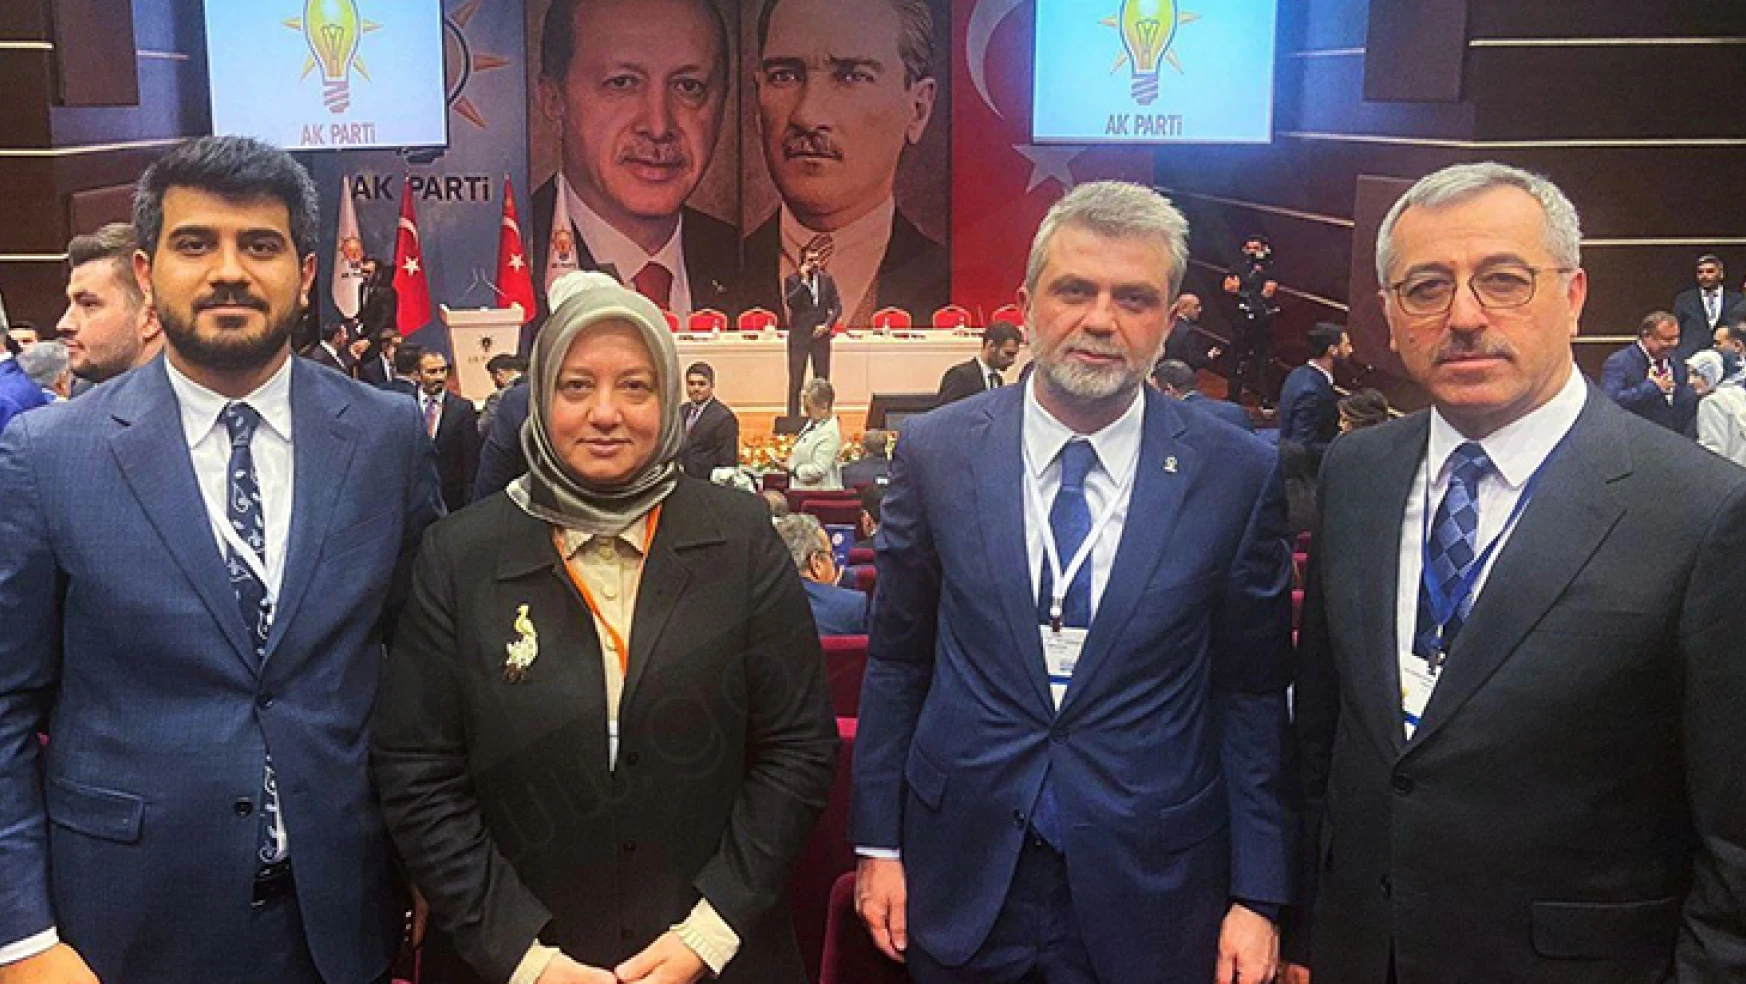 AK Parti Kahramanmaraş heyeti, il başkanları toplantısında